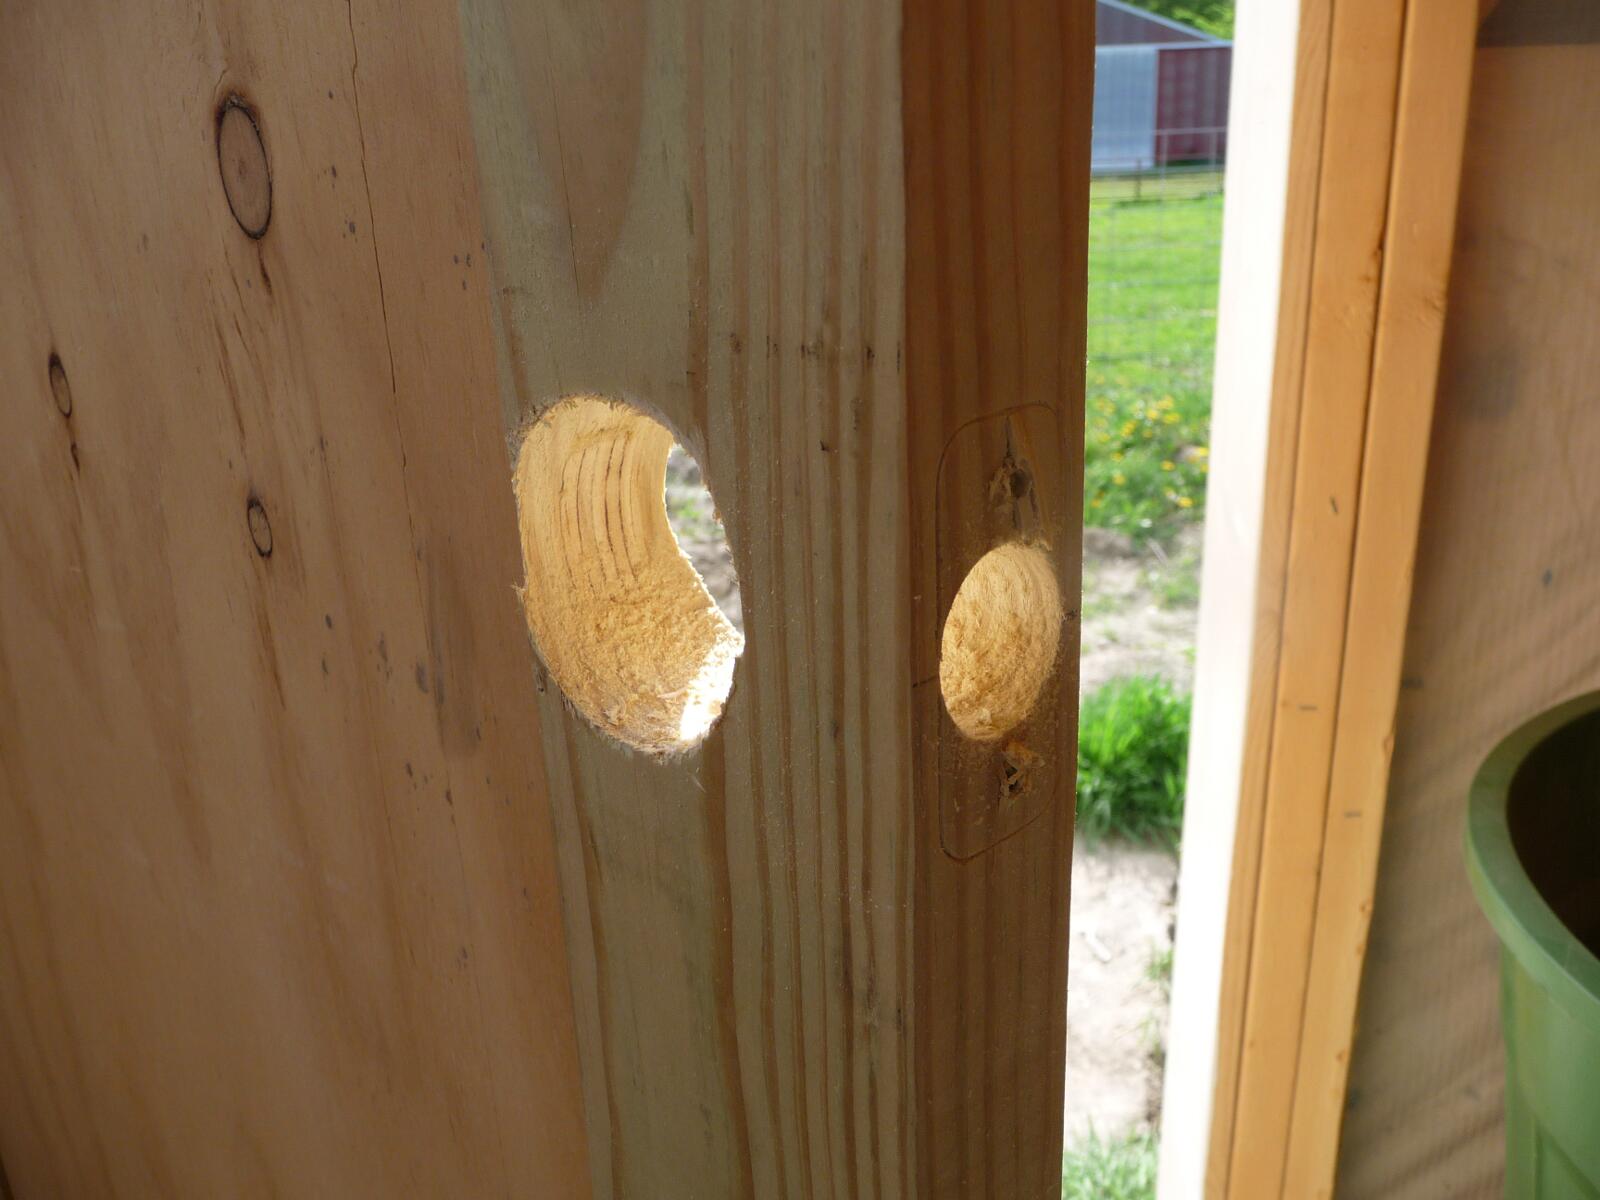 Completed holes in the door